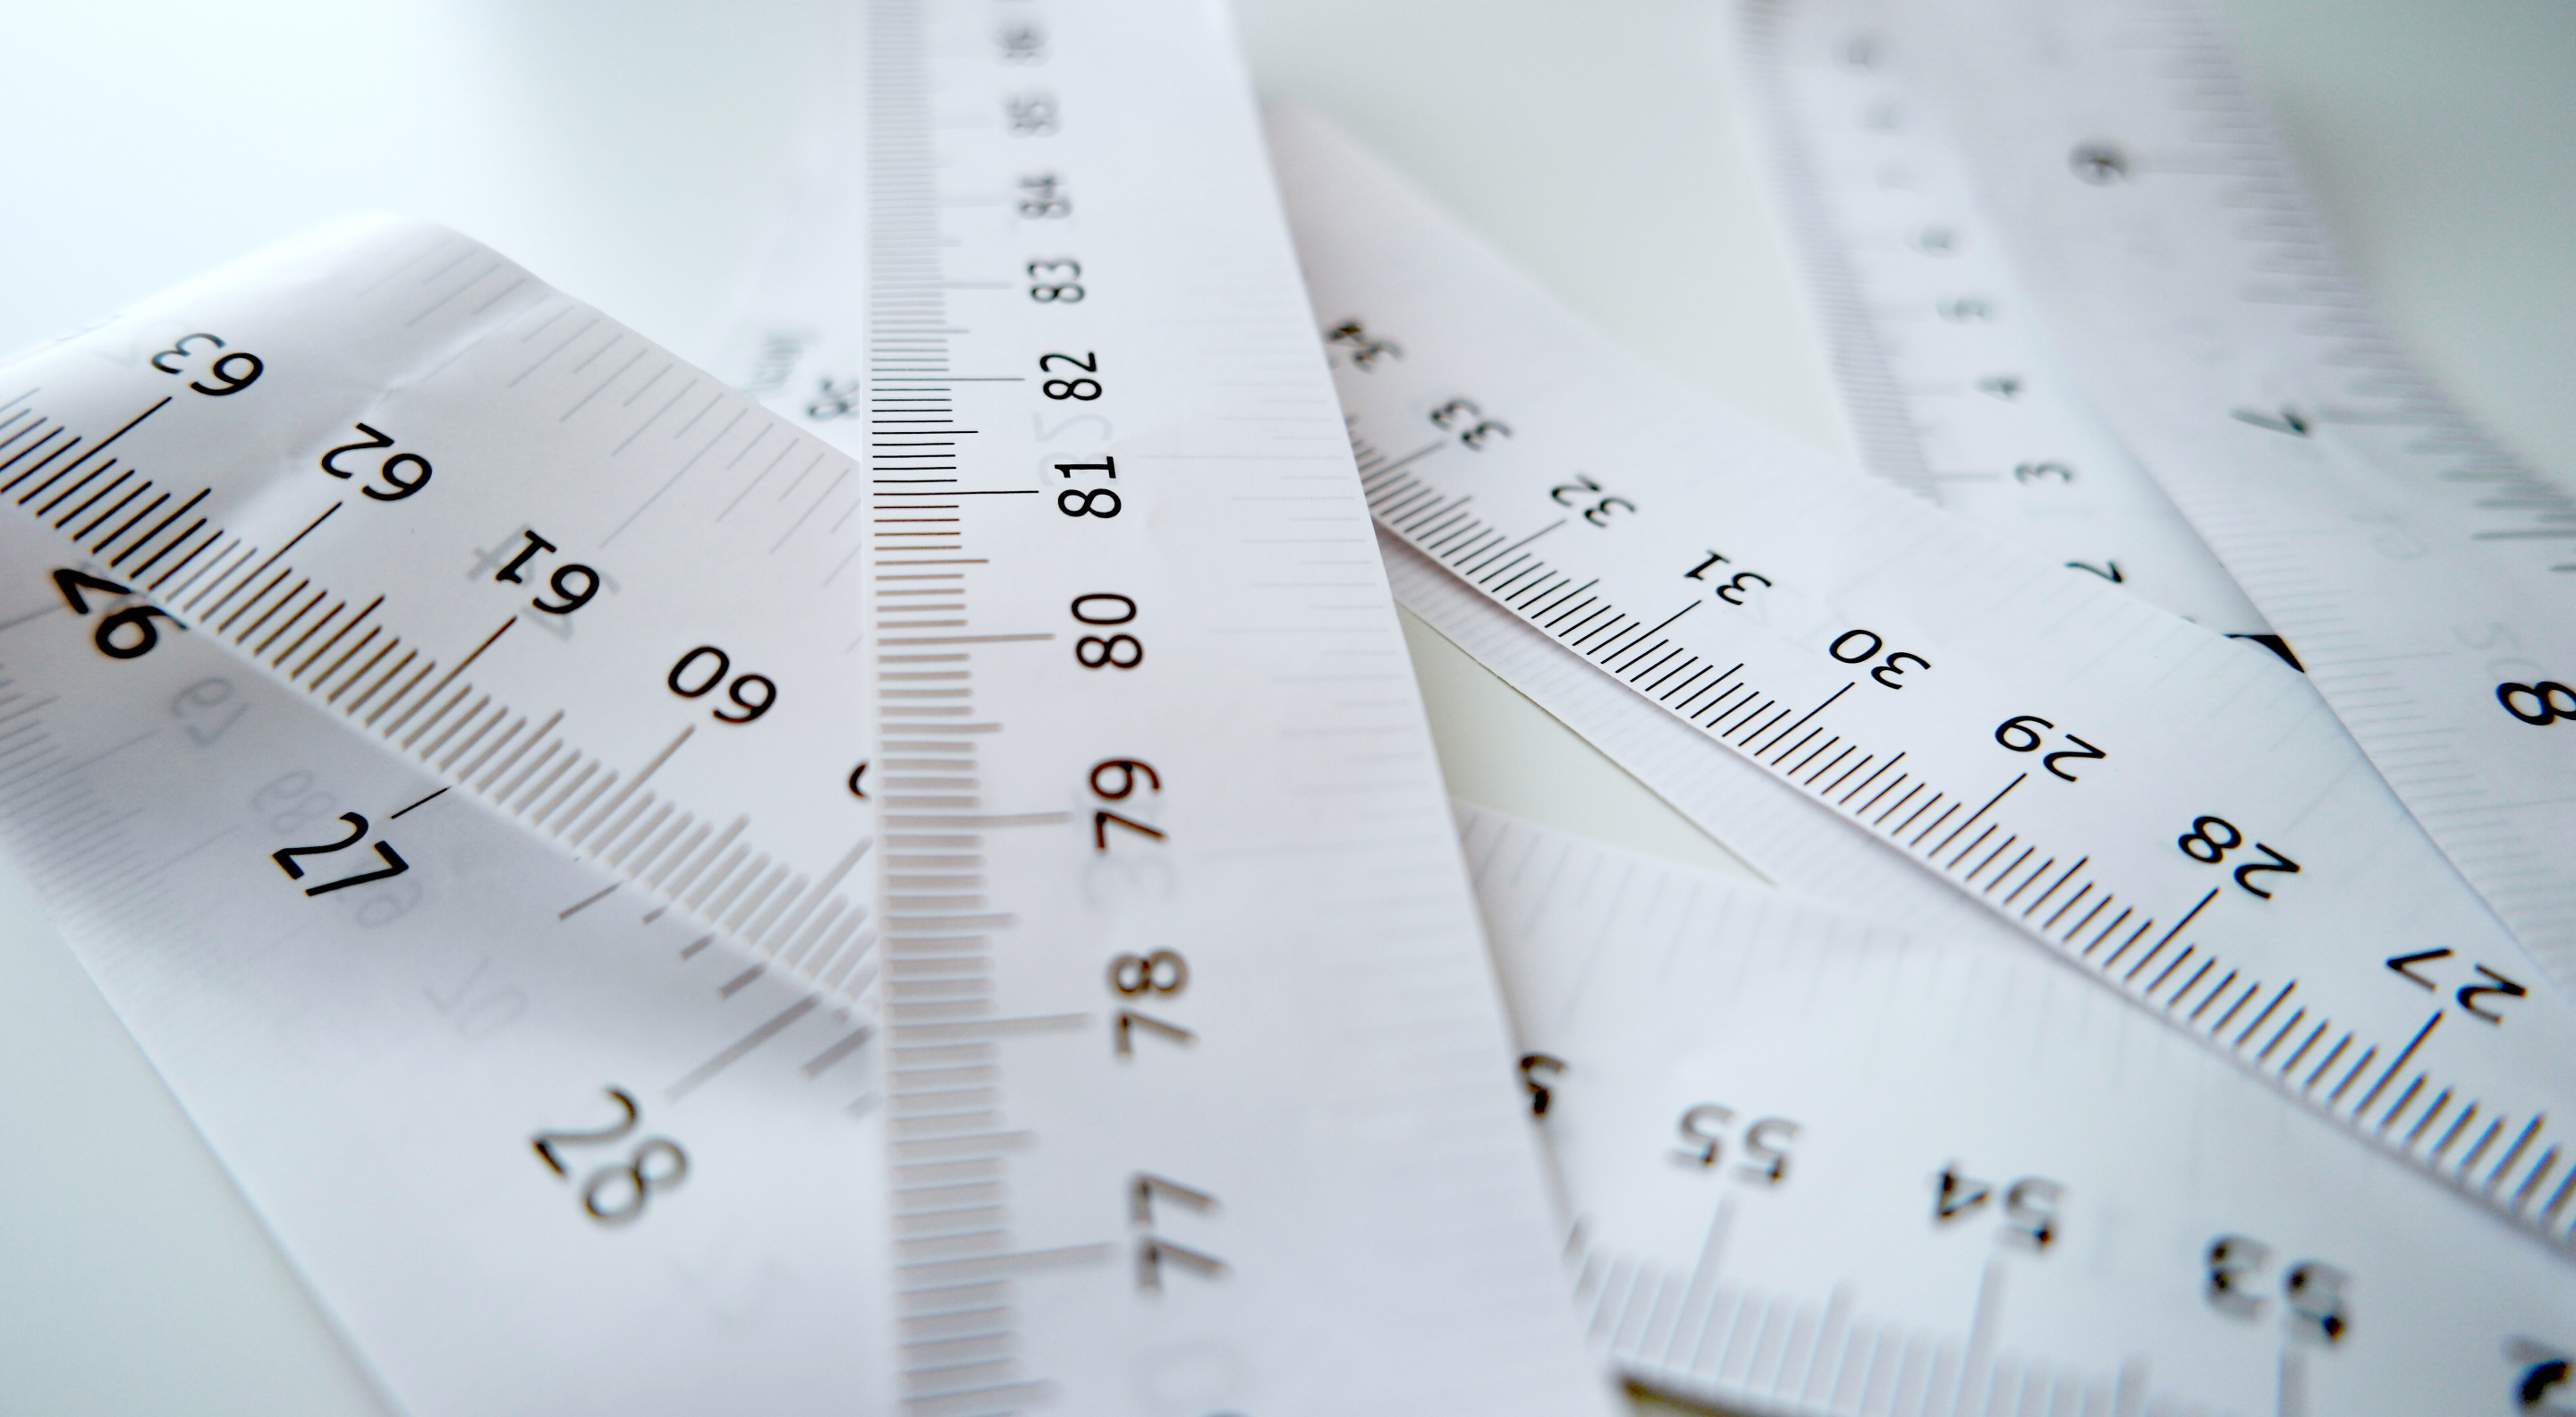 Die Waist-to-Height Ratio (Taille-zu-Größe-Verhältnis) bezeichnet das Verhältnis zwischen Taillenumfang und Körpergröße. Im Vergleich zum Body-Mass-Index (BMI) soll sie eine bessere Aussage über die Verteilung des Körperfetts machen.